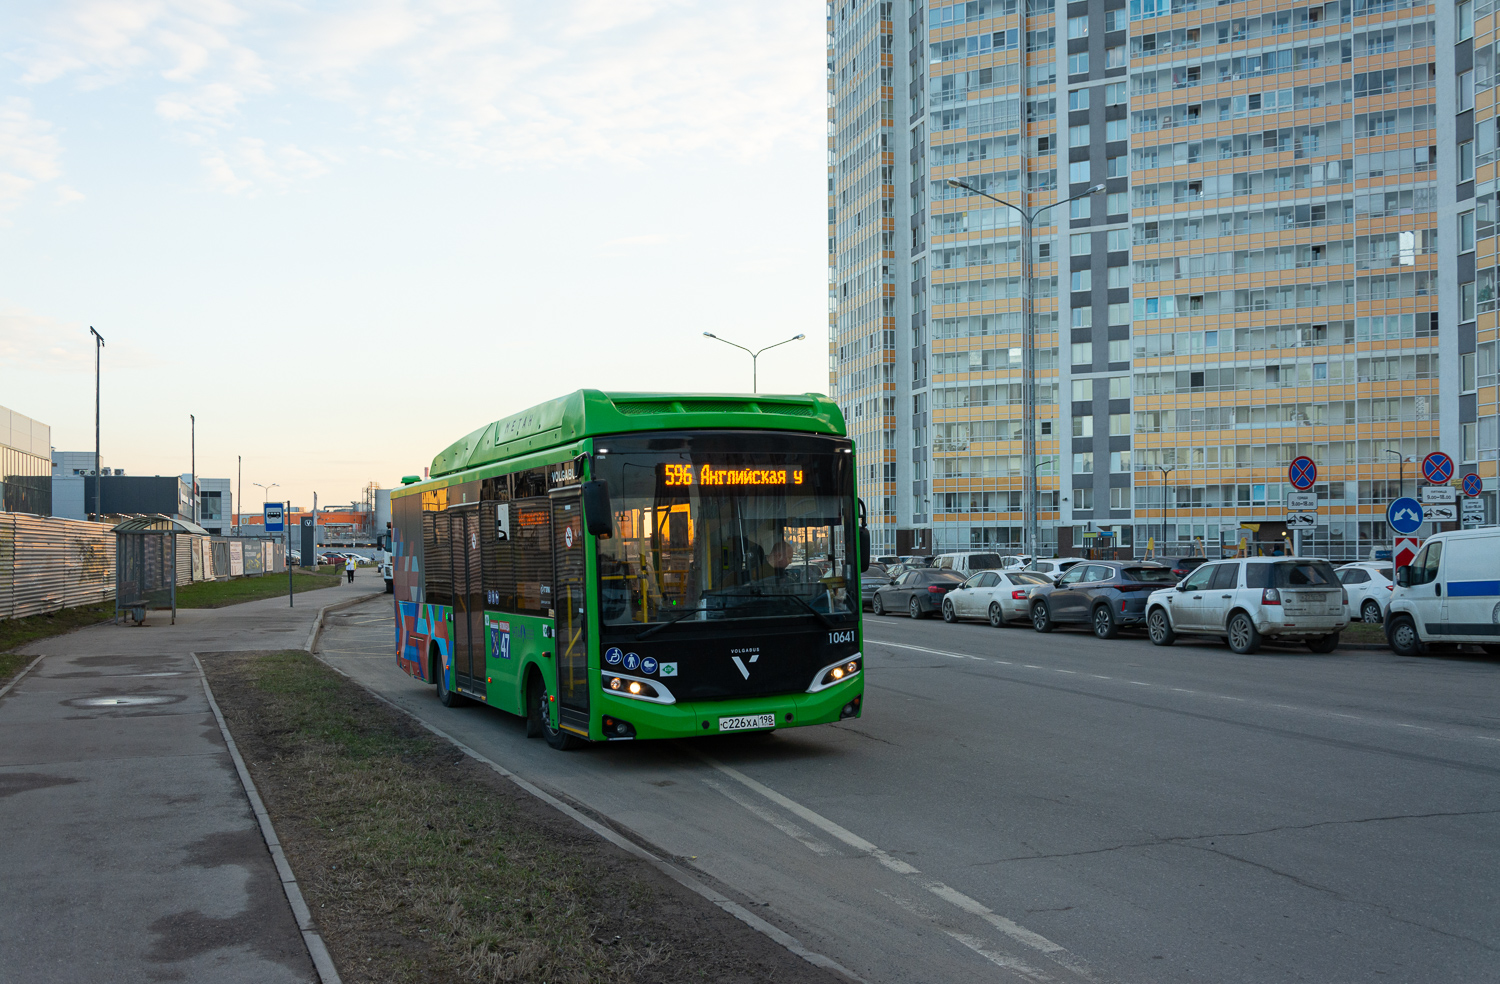 サンクトペテルブルク, Volgabus-4298.G4 (CNG) # 10641